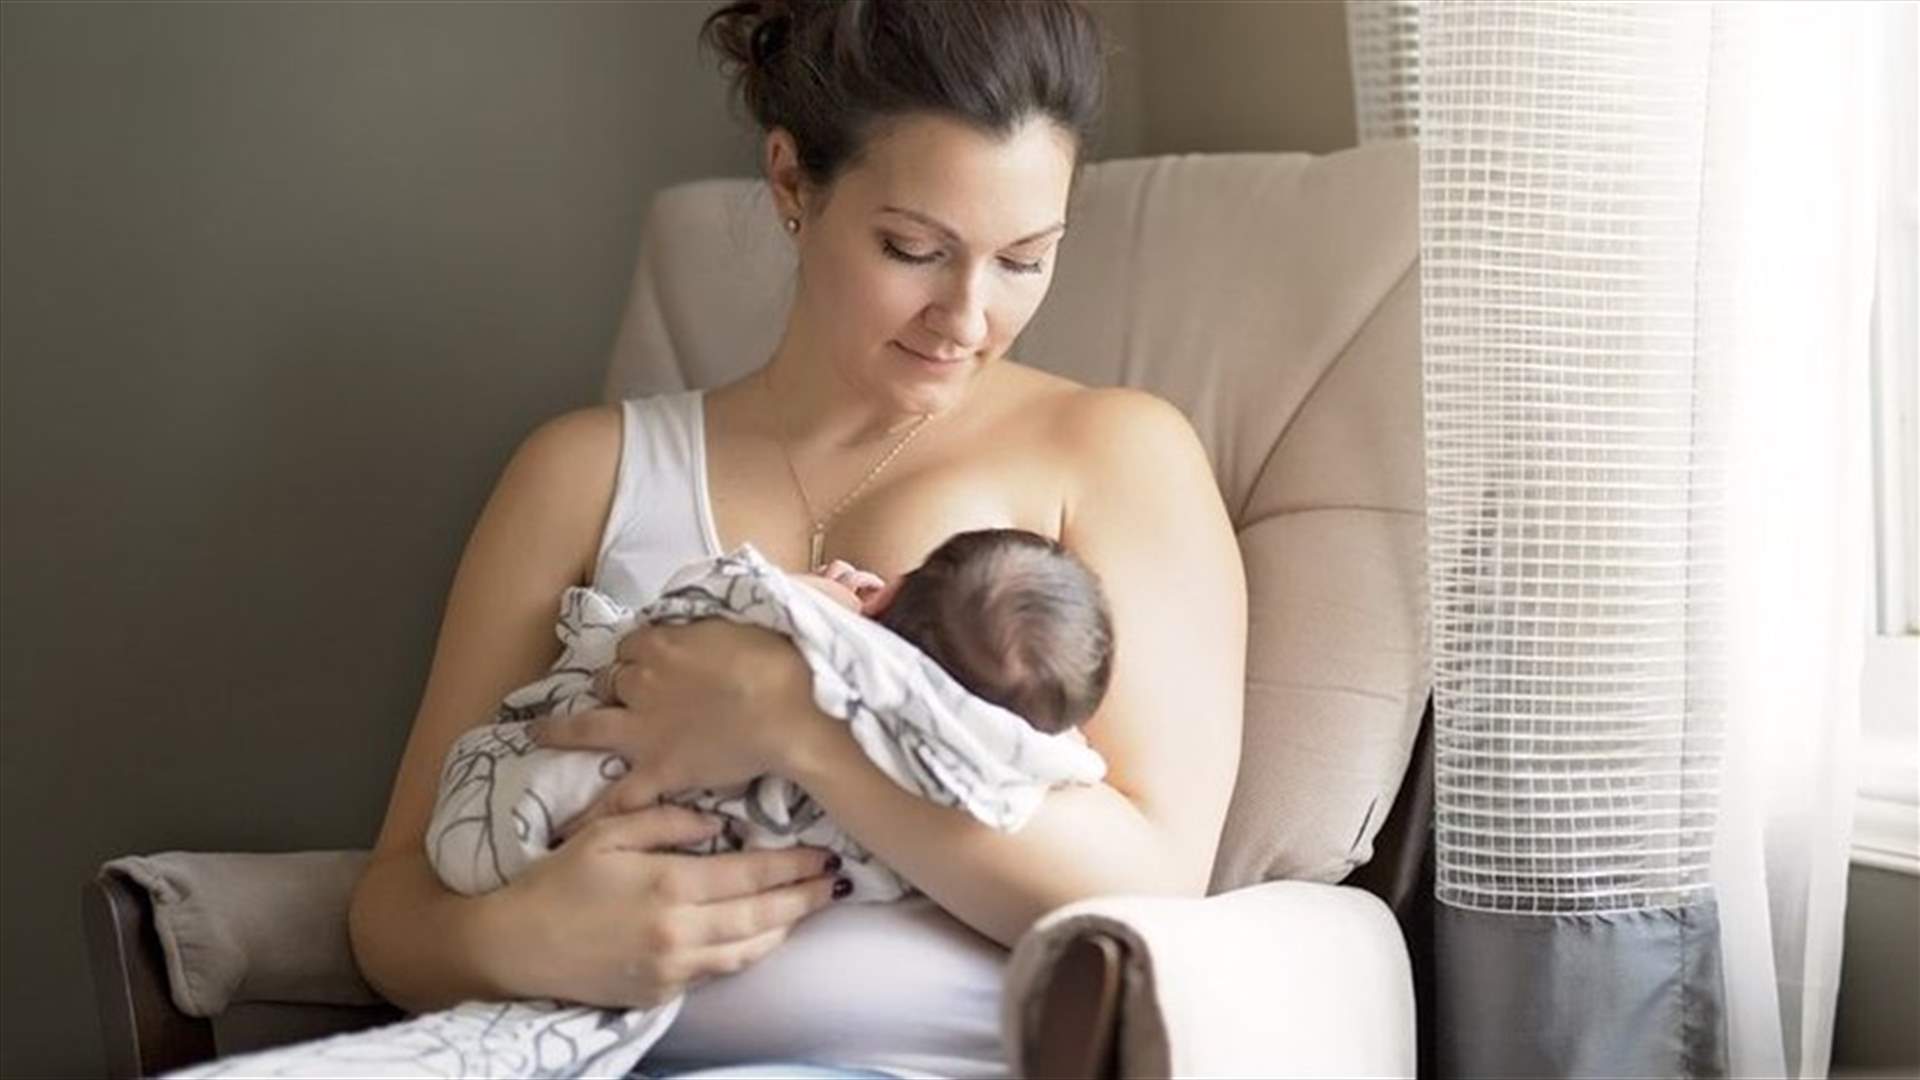 فوائد الرضاعة الطبيعية للطفل... وهذه هي الوضعيات الأنسب